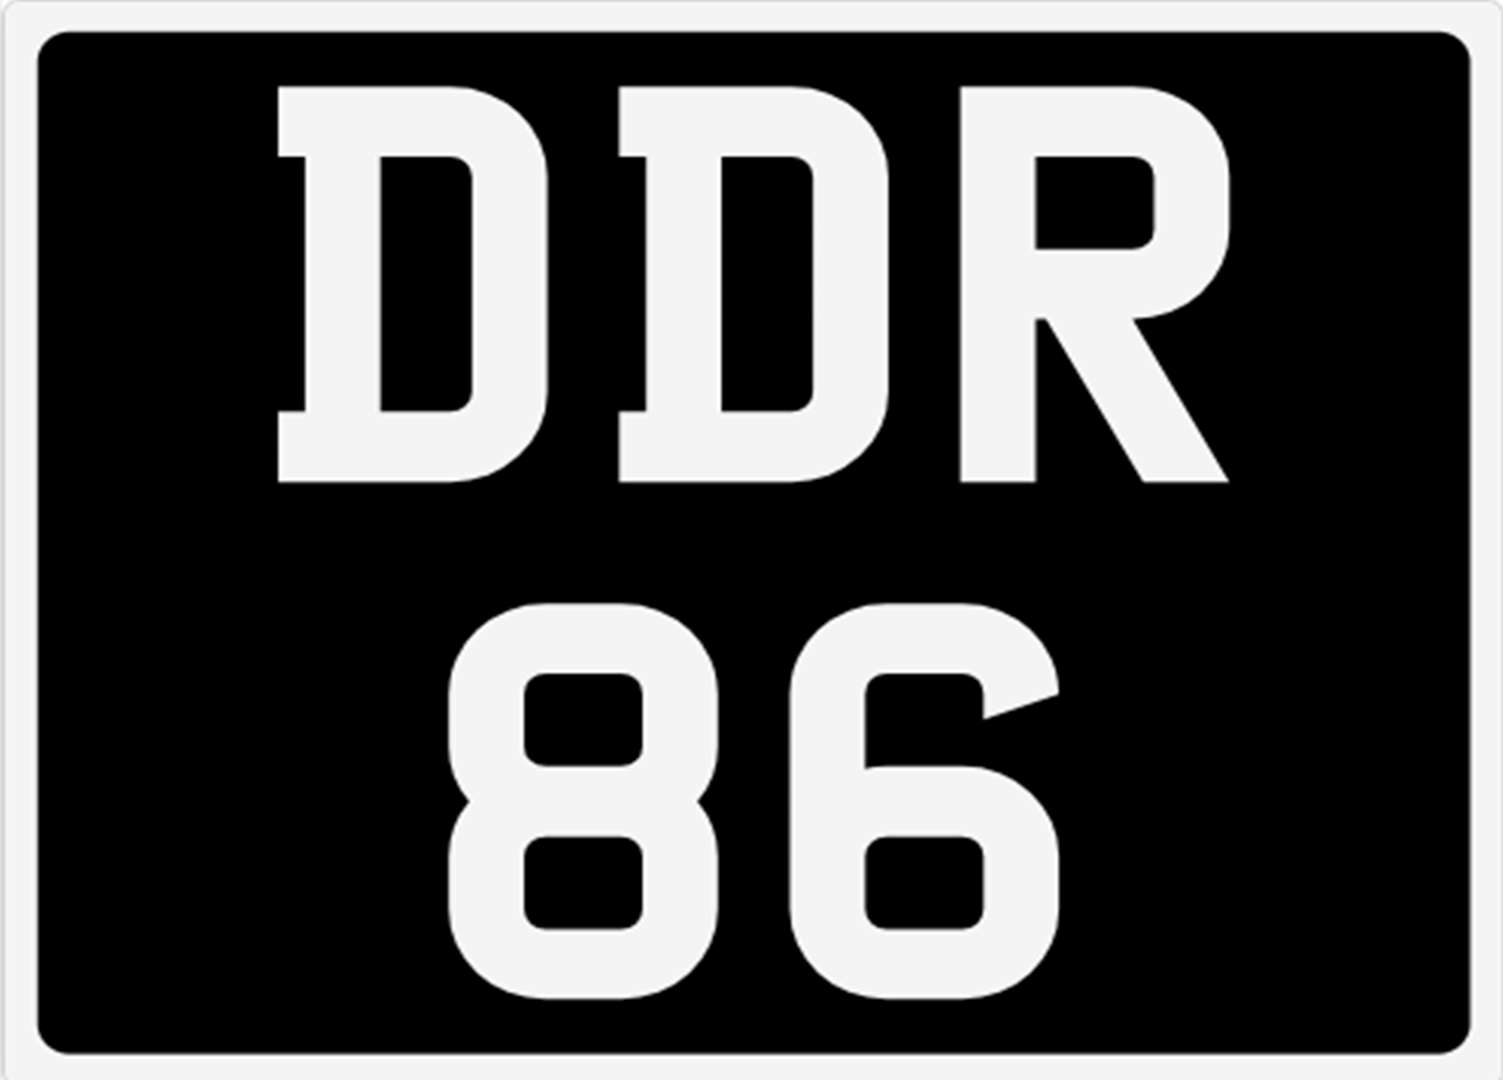 <p>&nbsp; DDR 86 Registration number</p>